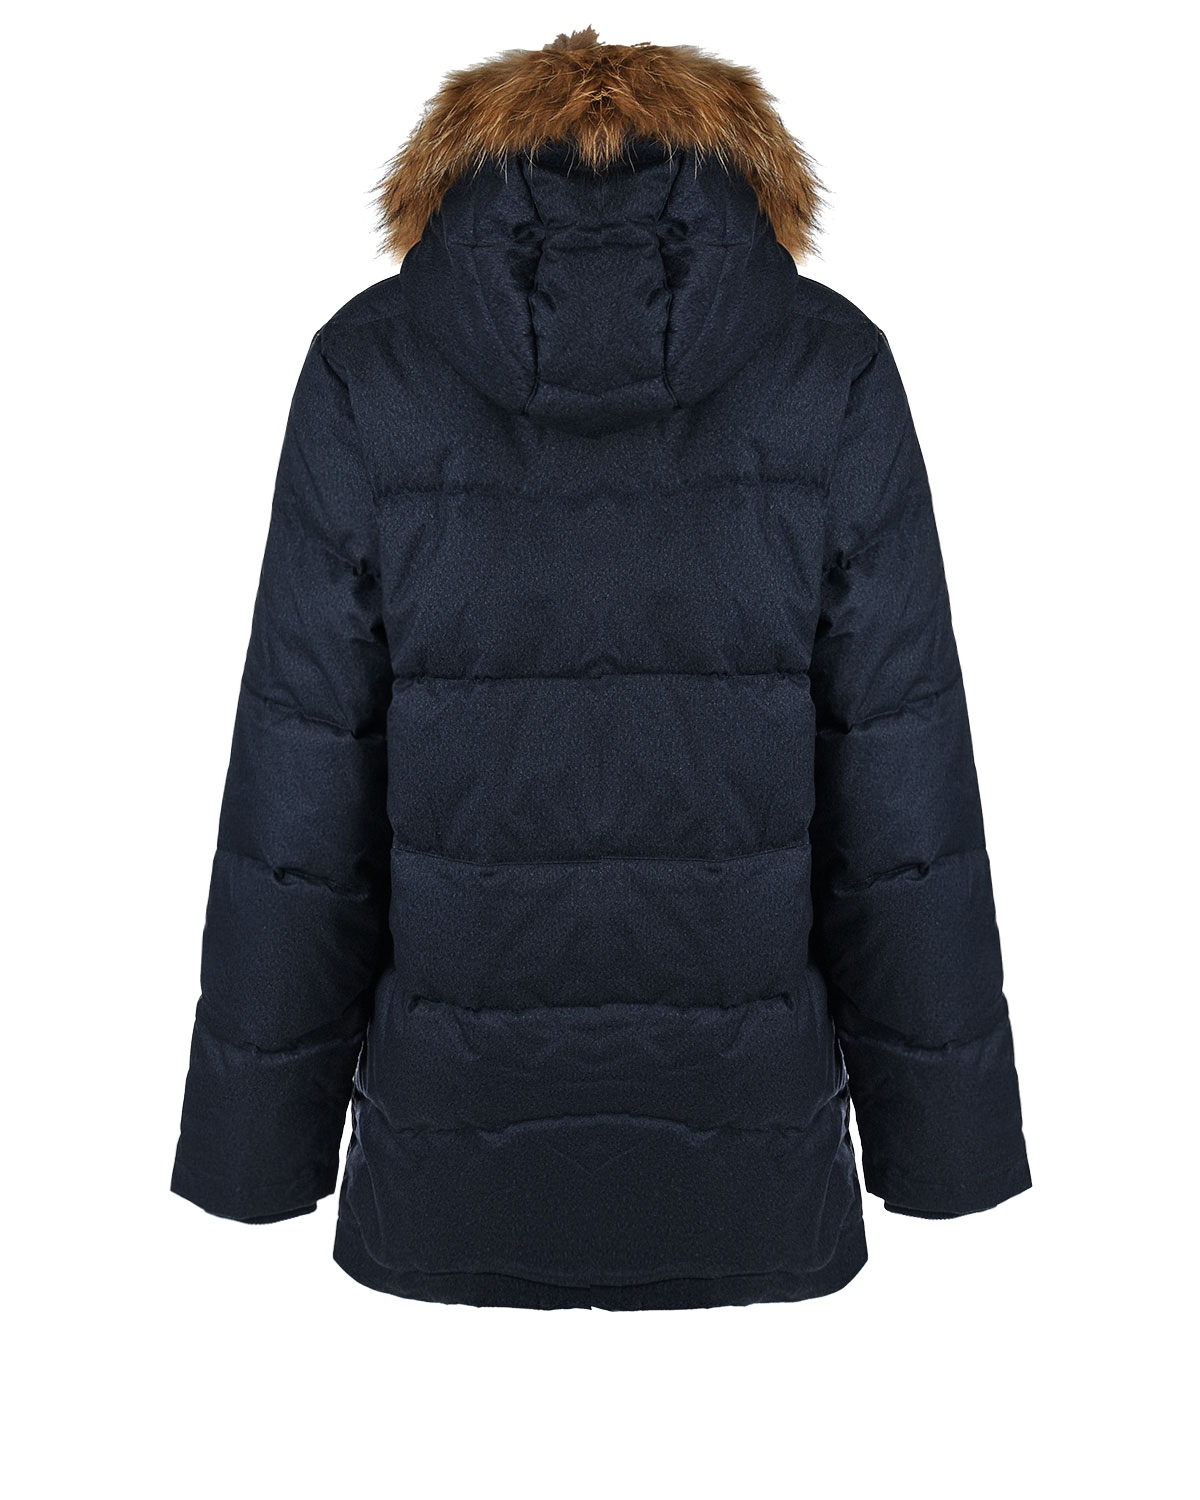 Зимняя куртка графитового цвета Junior Republic детская, размер 170/176 - фото 2